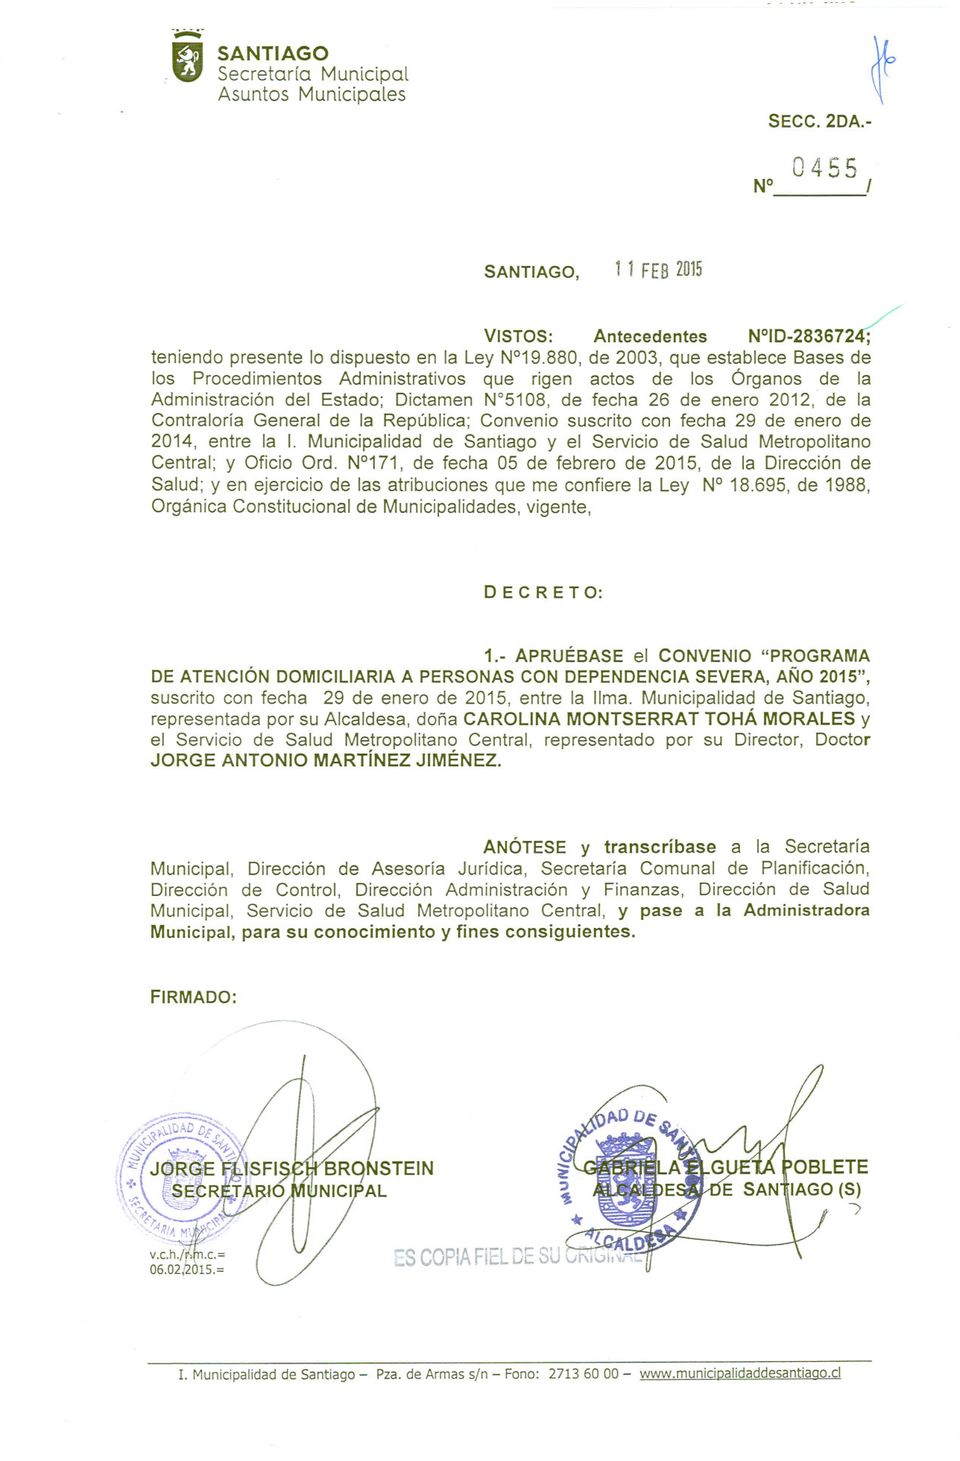 General de la República; Convenio suscrito con fecha 29 de enero de 2014, entre la 1. Municipalidad de Santiago y el Servicio de Salud Metropolitano Central; y Oficio Ord.